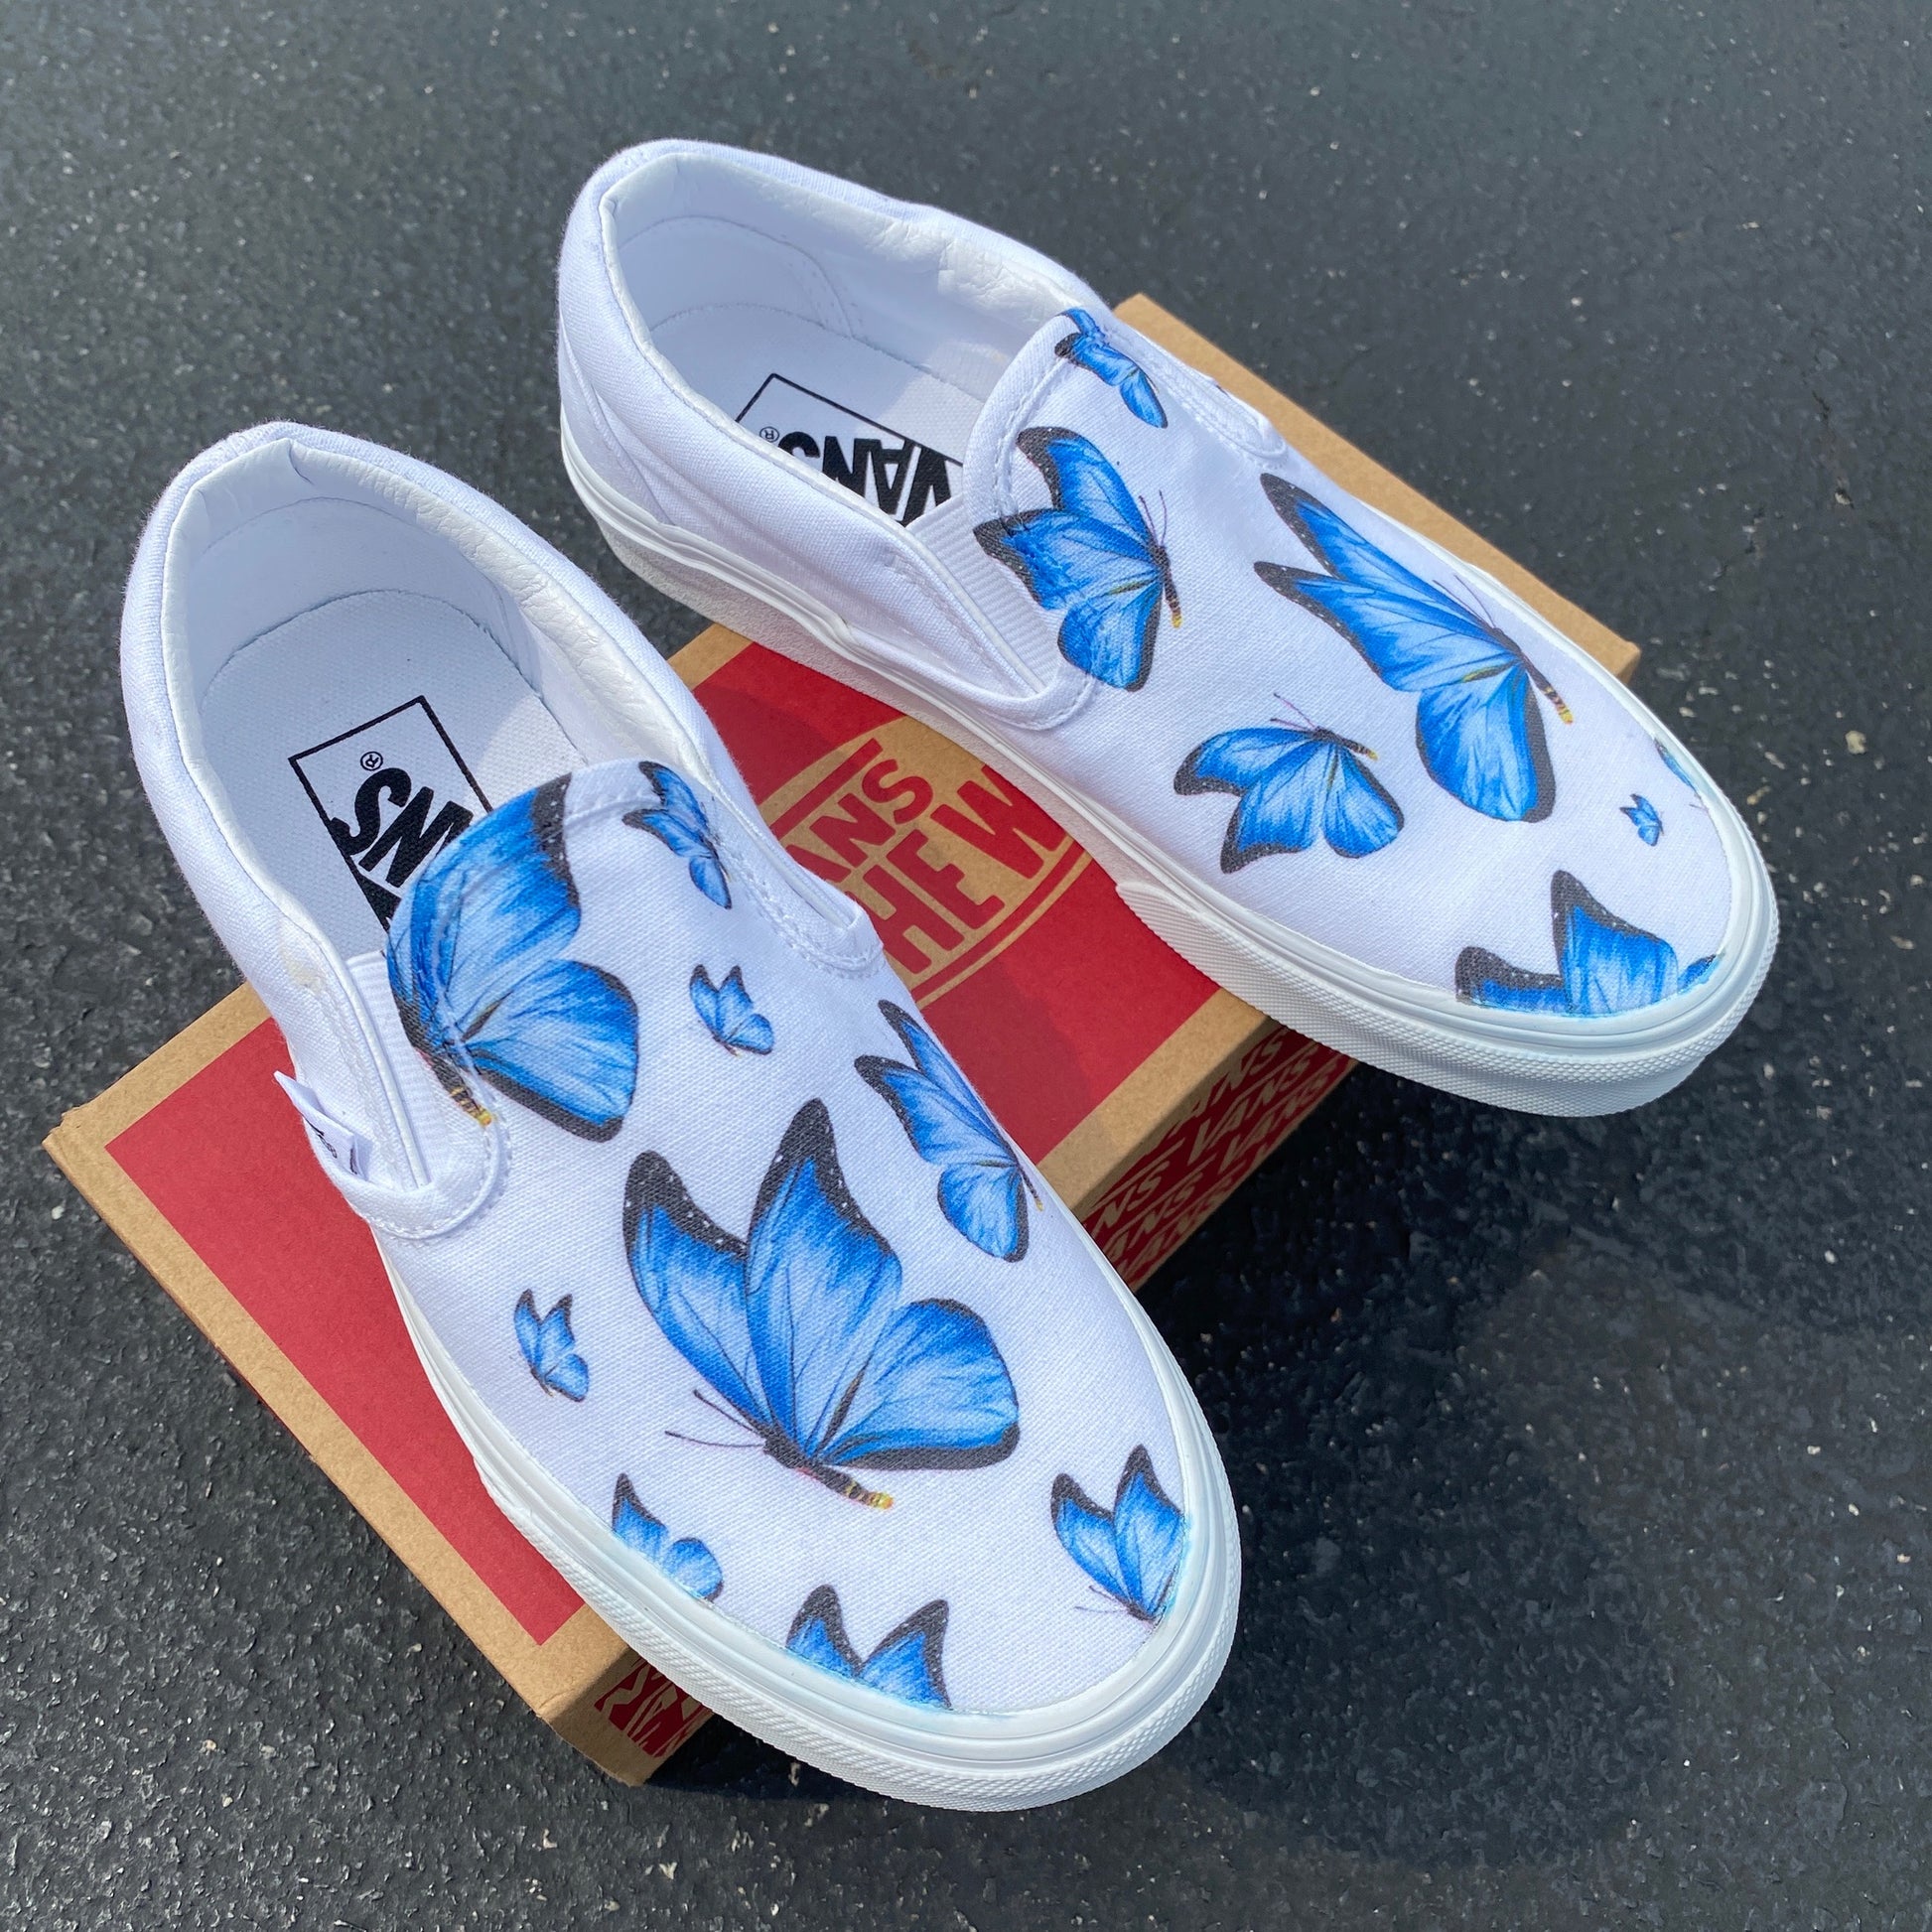 Blue Butterfly - White Slip Ons - Custom Vans Shoes